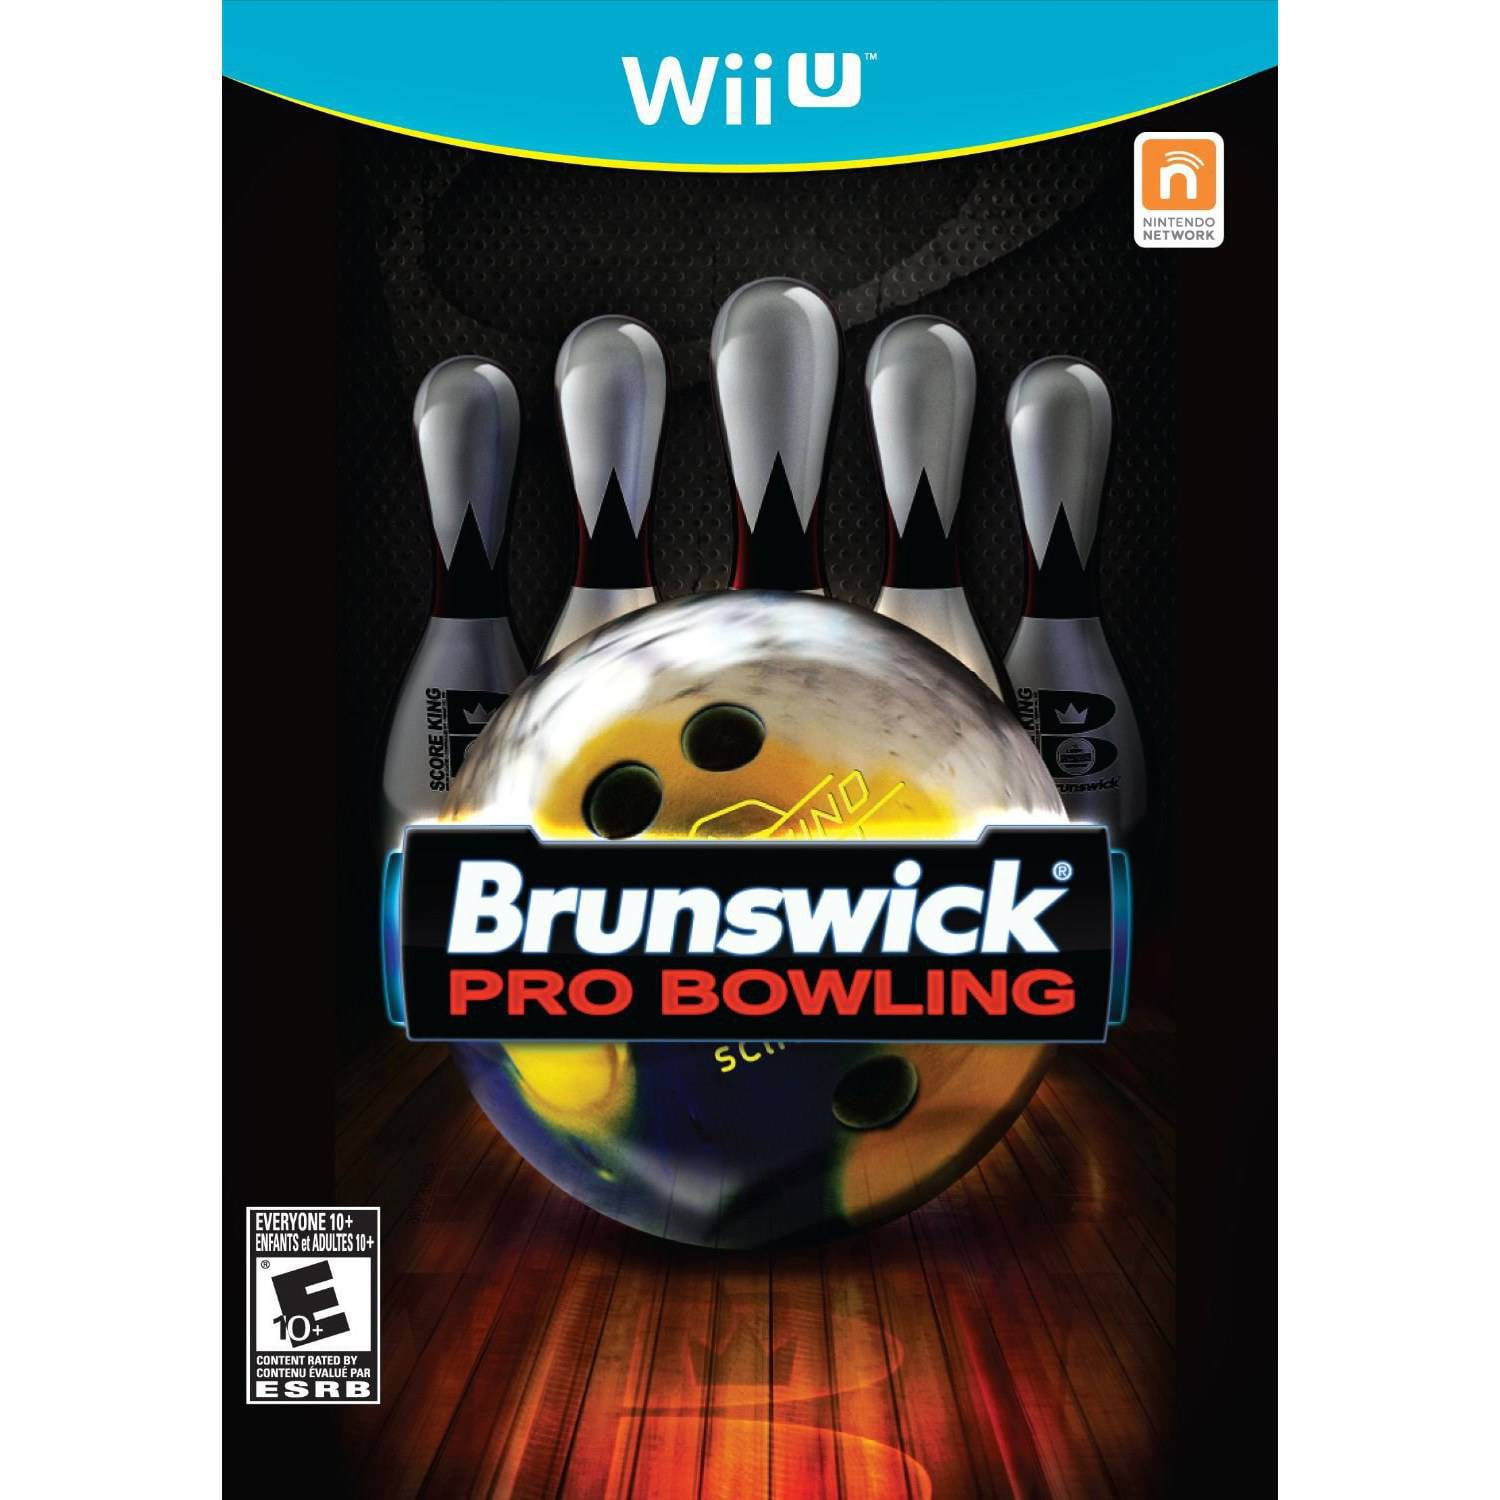 Alliance Media Brunswick Bowling (Wii U) - Video Game